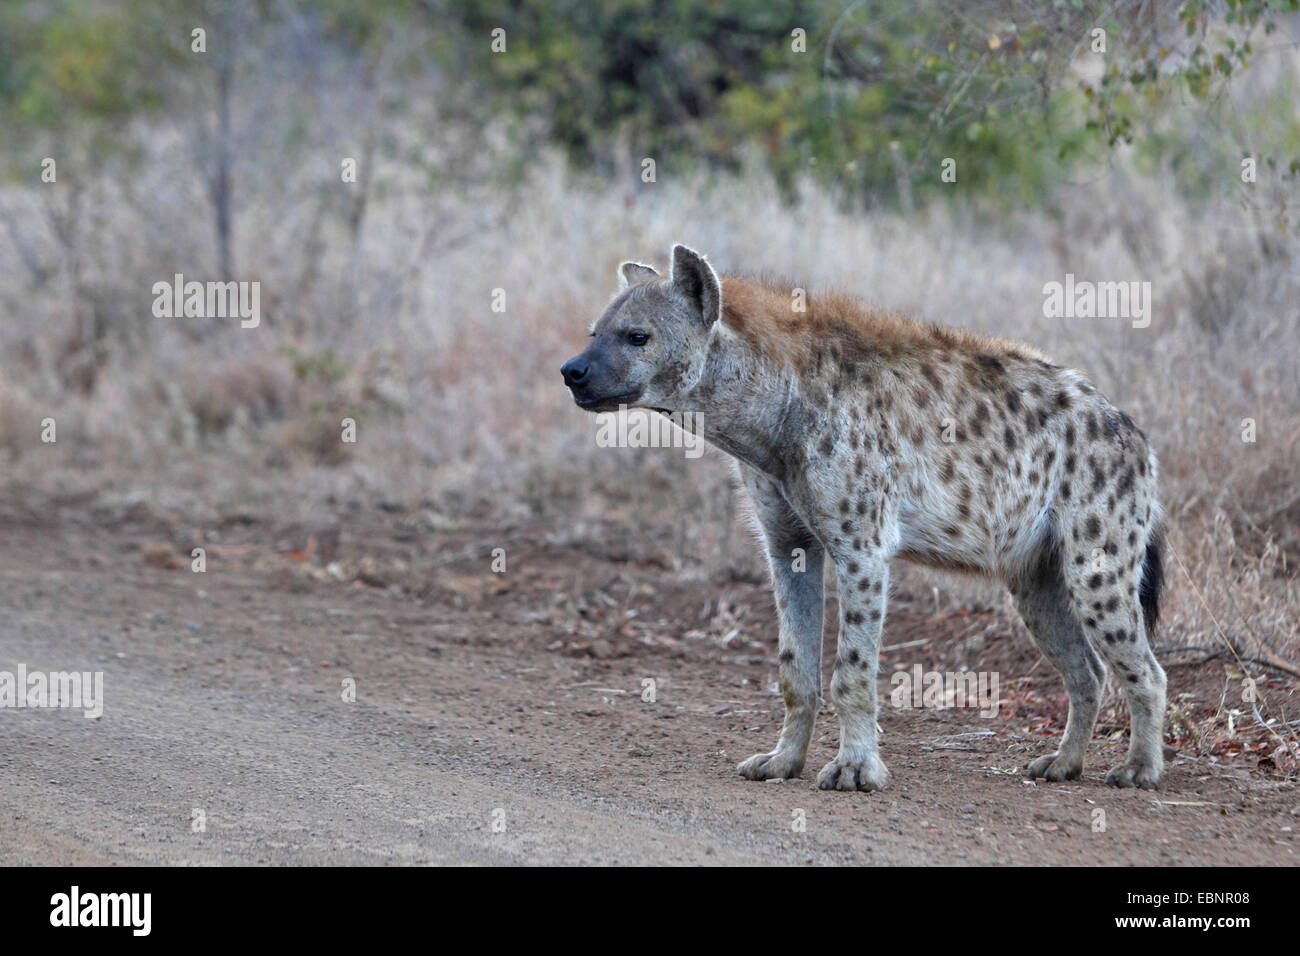 L'Hyène tachetée (Crocuta crocuta), se dresse au bord d'une route de terre, Afrique du Sud, Kruger National Park Banque D'Images